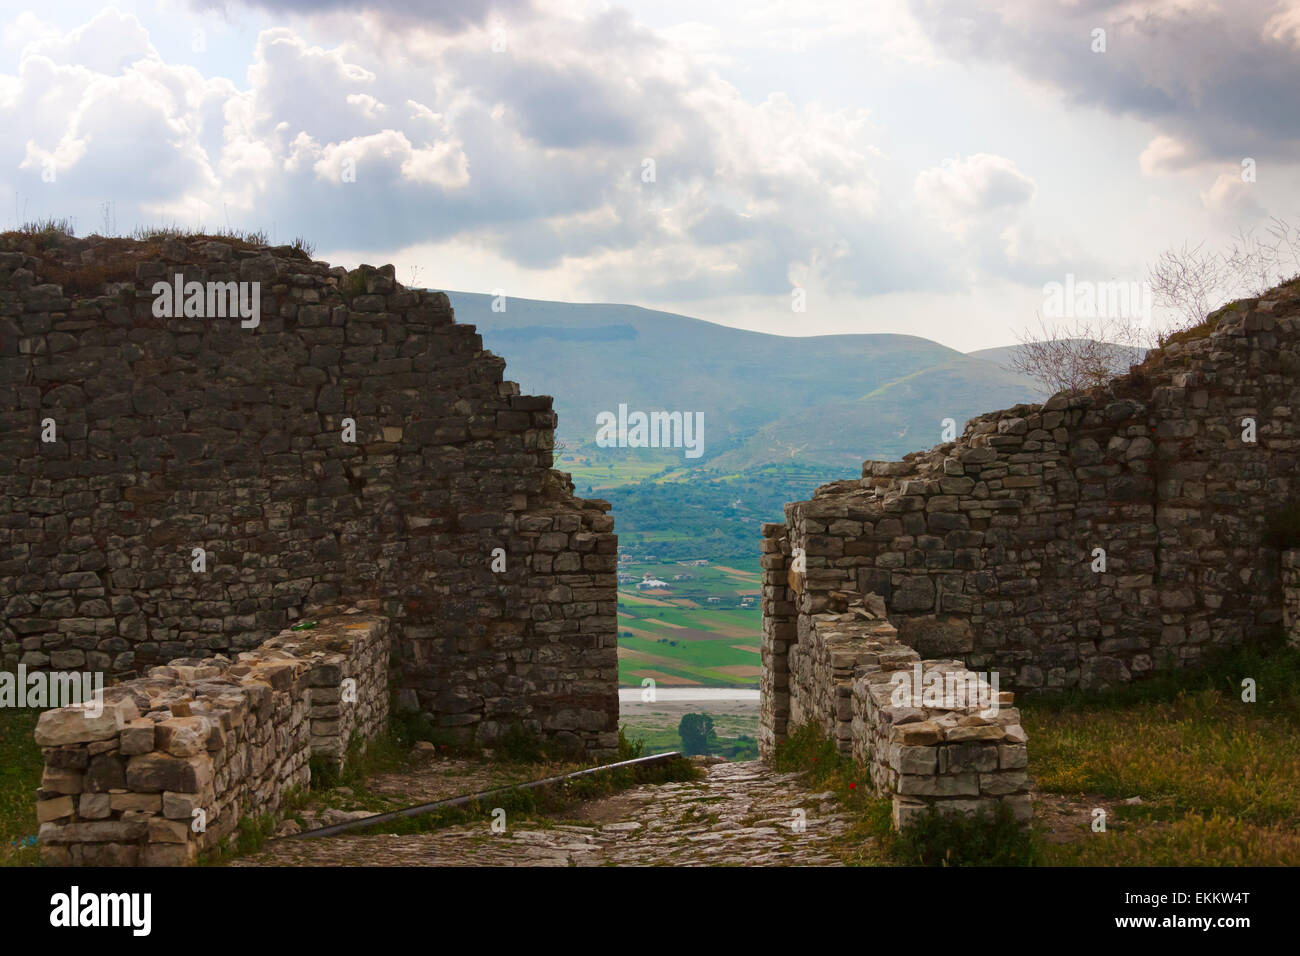 La alcazaba y el castillo de Berat (Patrimonio de la humanidad de la UNESCO), Albania Foto de stock